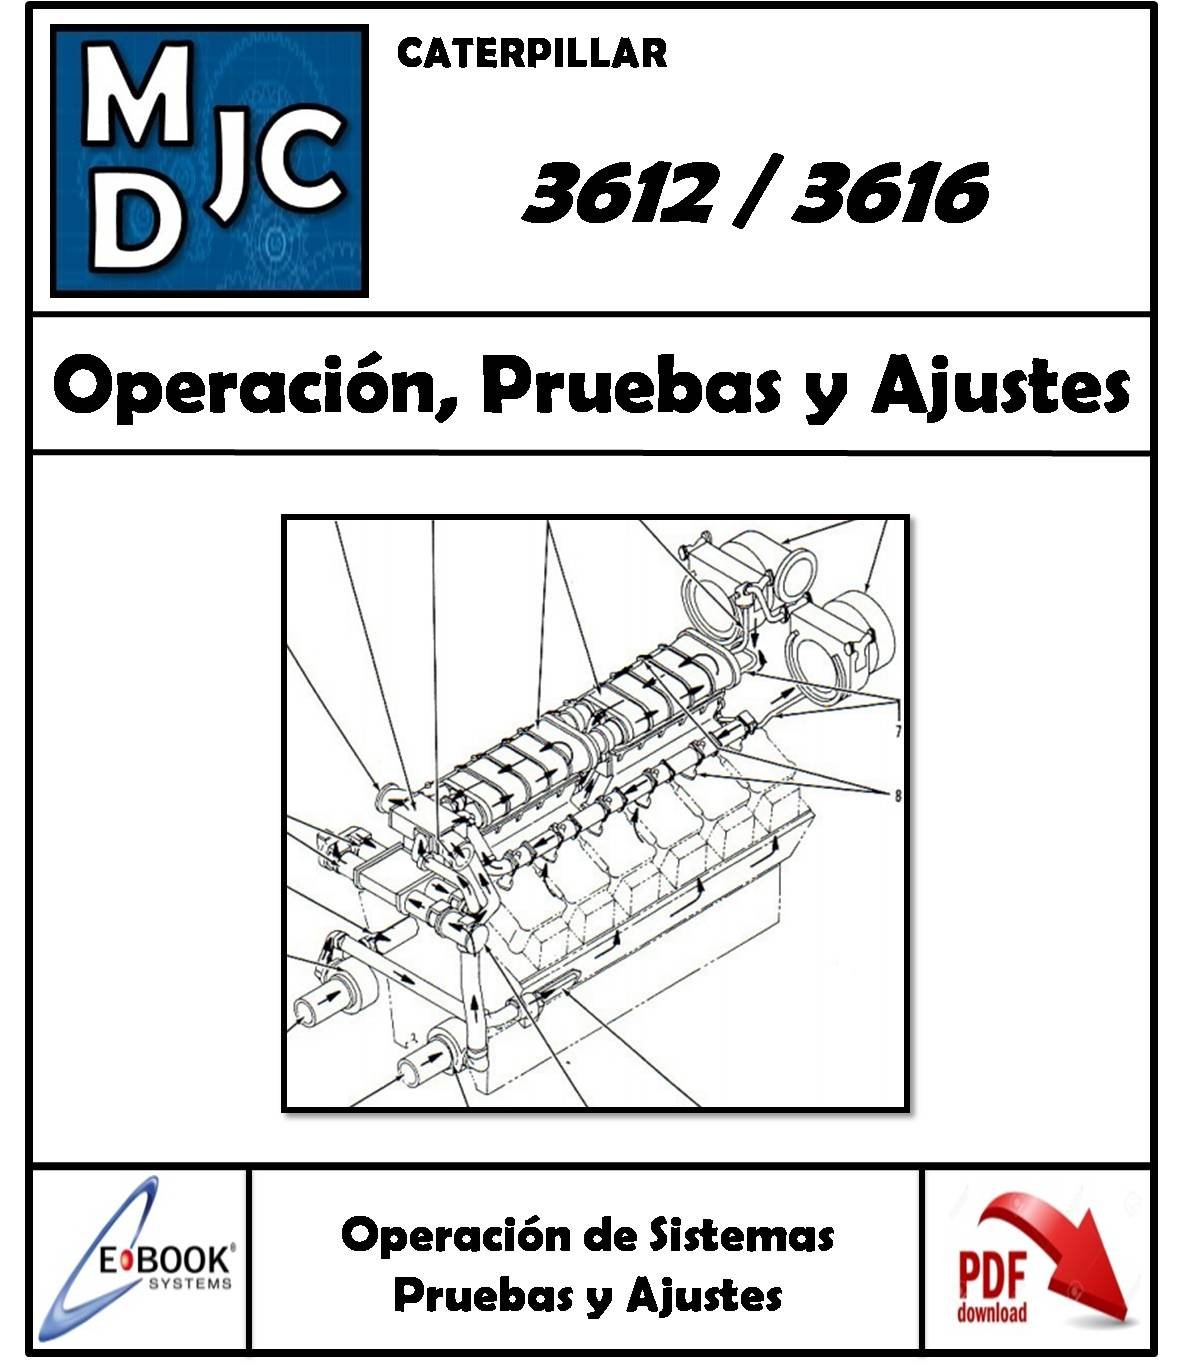 Manual de Taller ( Operación, Pruebas y Ajustes ) Motor Caterpillar 3612 / 3616